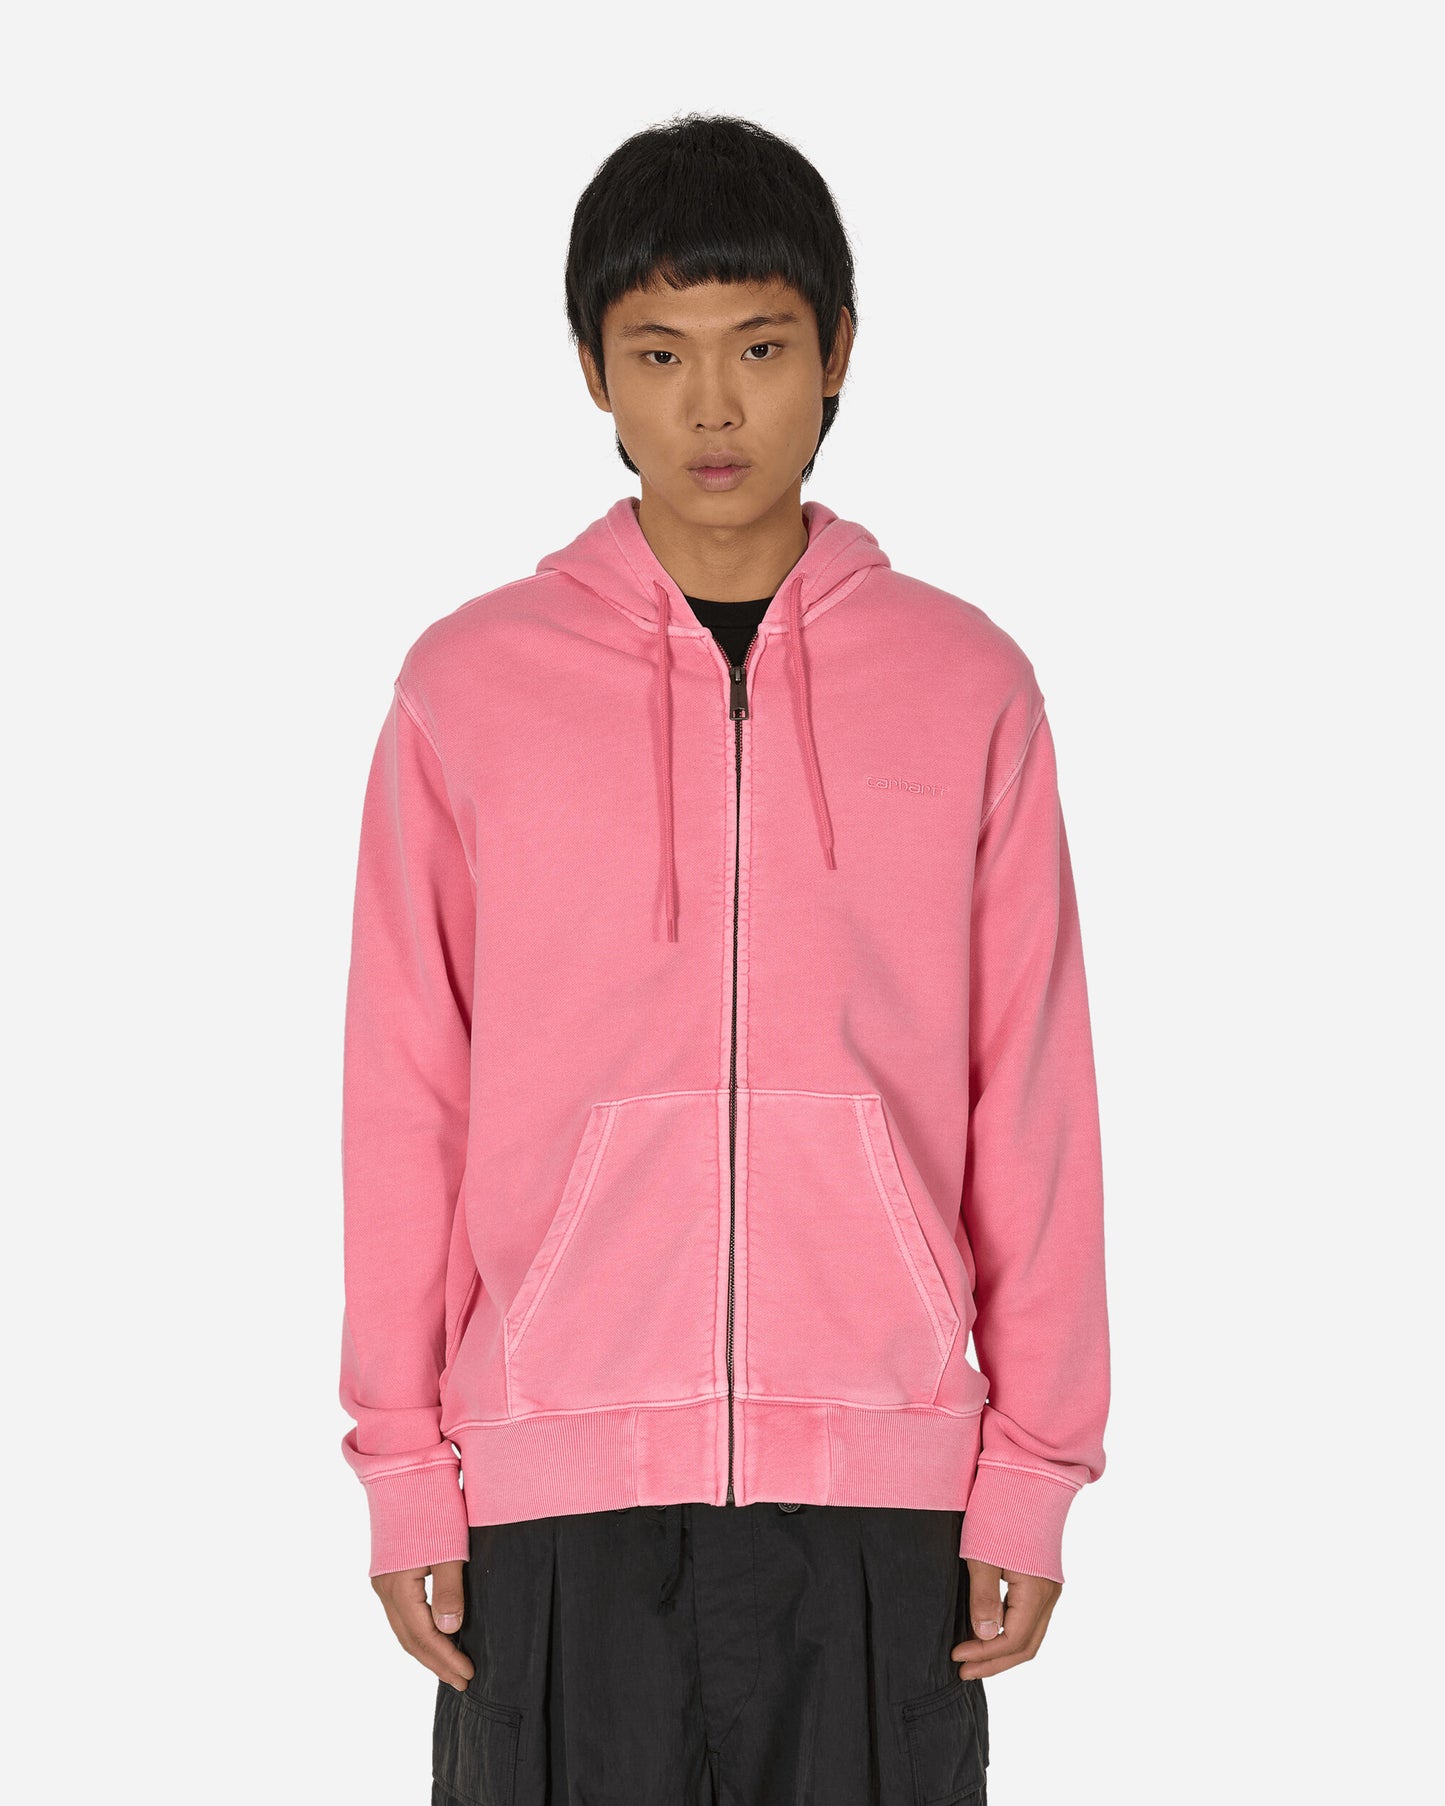 Carhartt WIP Hooded Duster Script Jacket Charm Pink Sweatshirts Hoodies I033619 29PGD